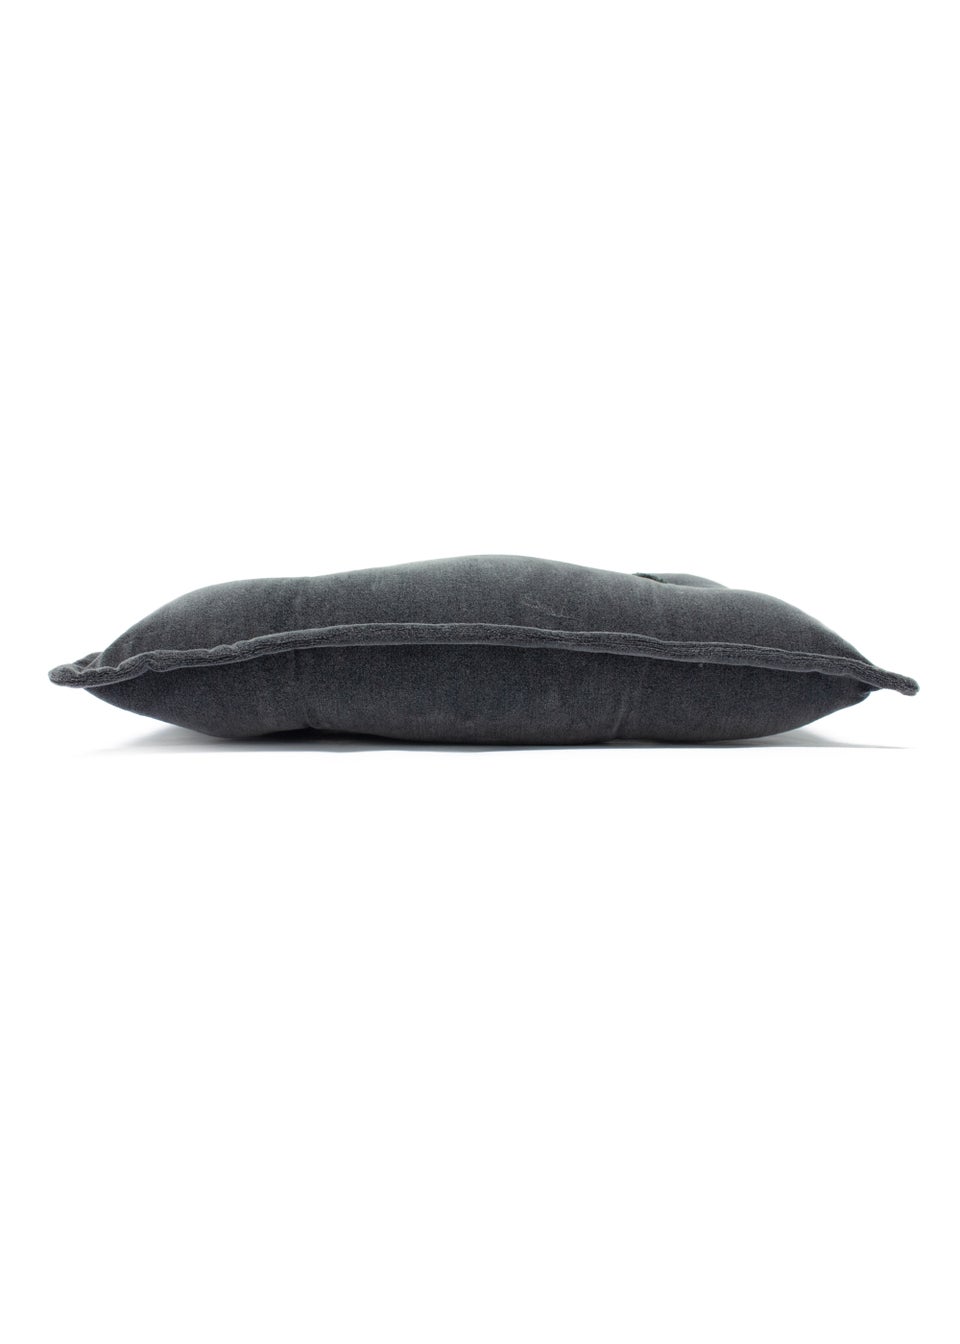 furn. Bobble Velvet Cushion (30cm x 50cm x 8cm)